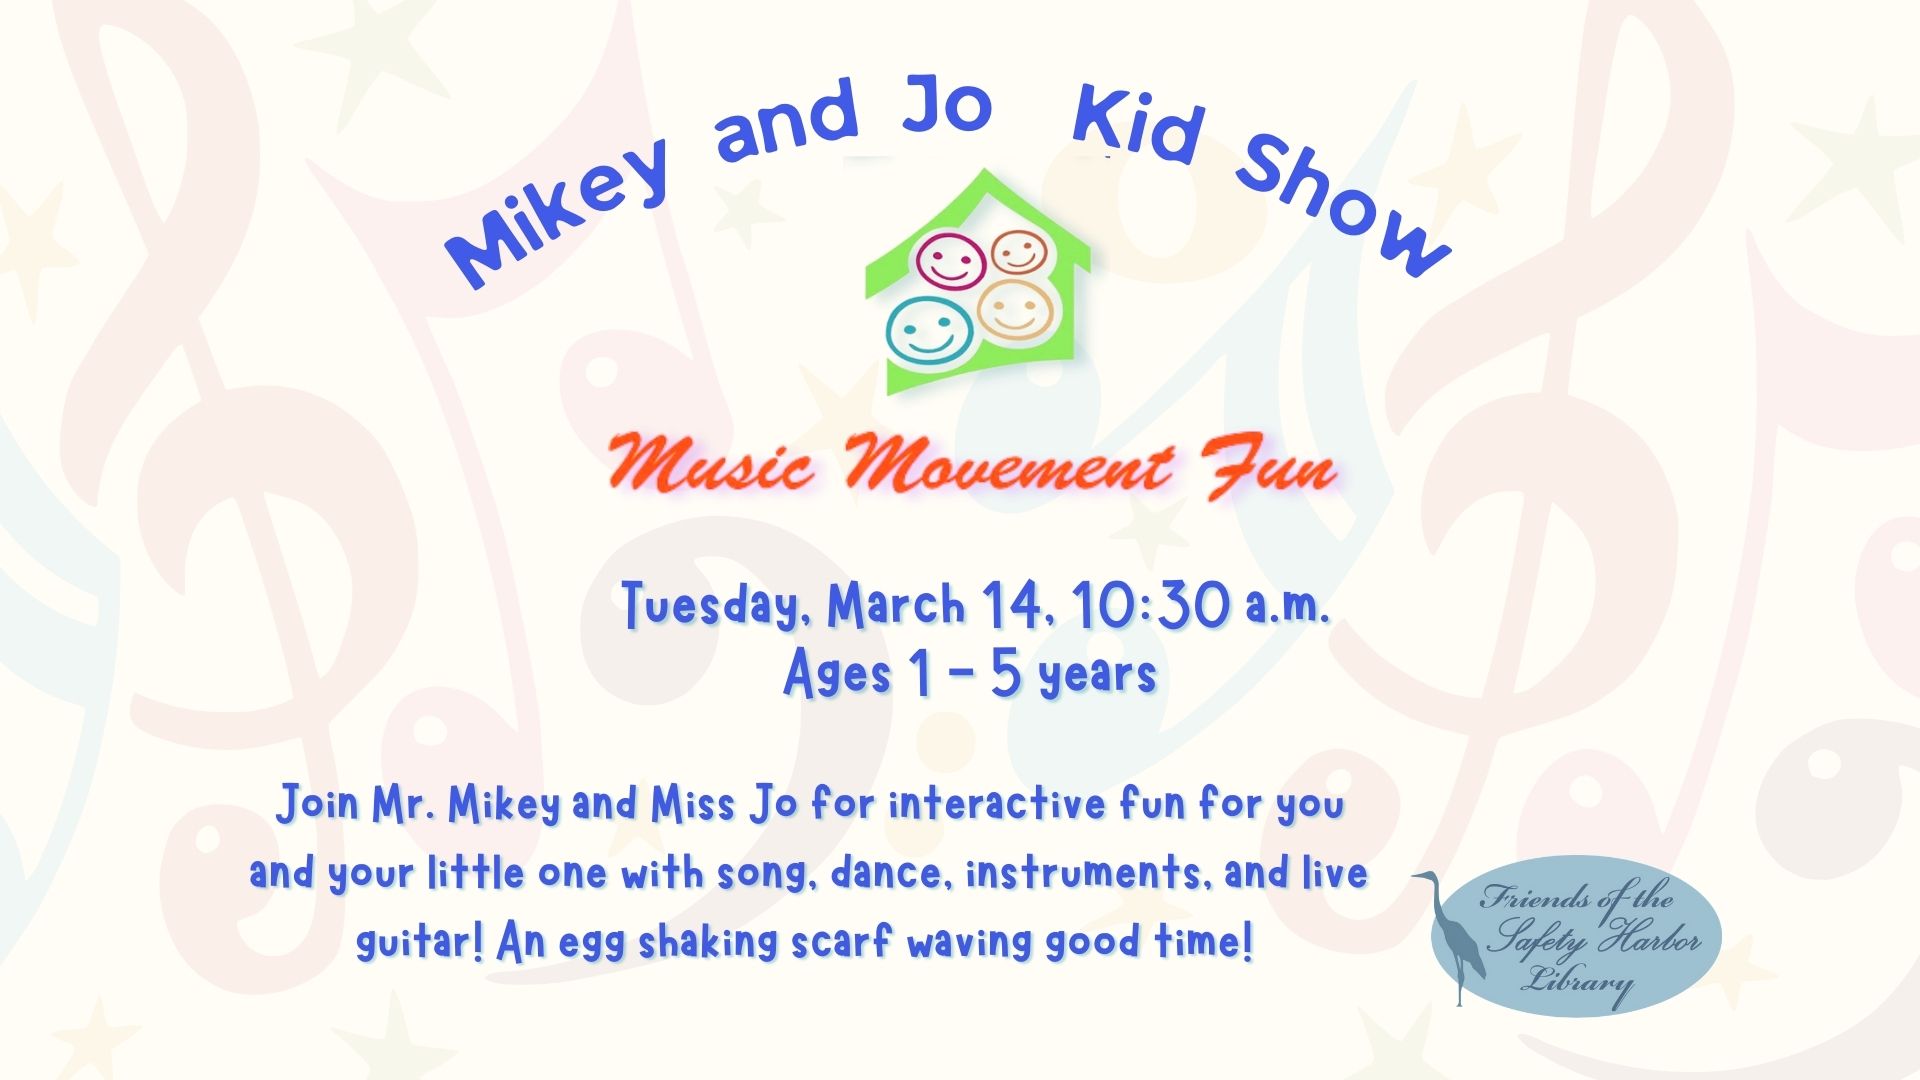 Mikey & Jo Kids show